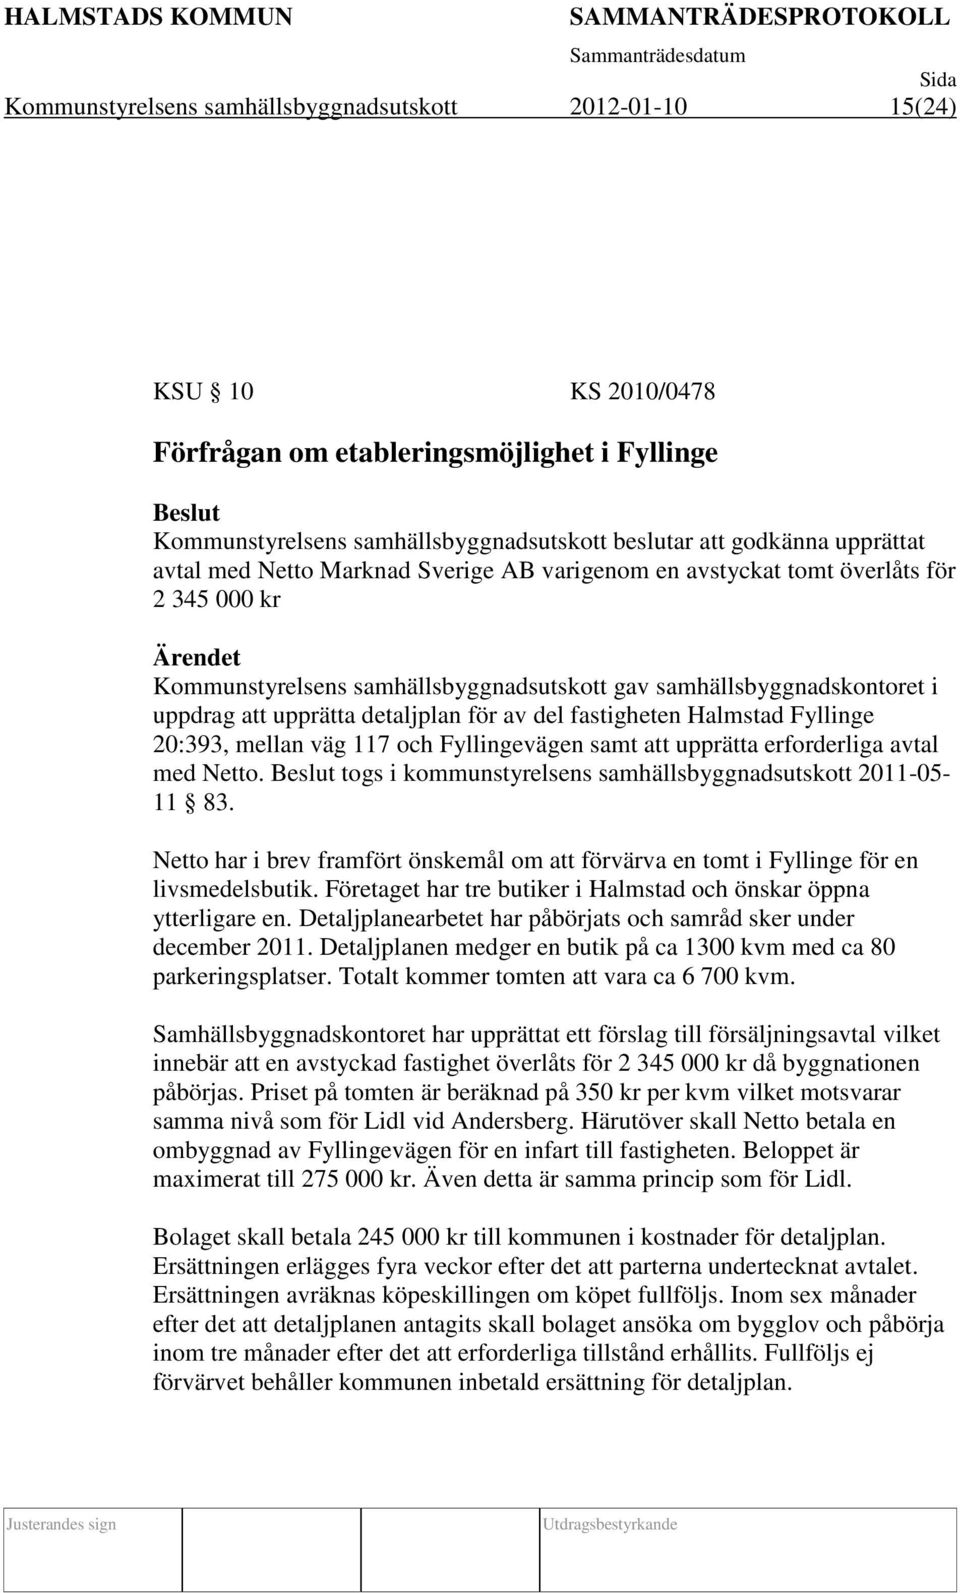 del fastigheten Halmstad Fyllinge 20:393, mellan väg 117 och Fyllingevägen samt att upprätta erforderliga avtal med Netto. togs i kommunstyrelsens samhällsbyggnadsutskott 2011-05- 11 83.